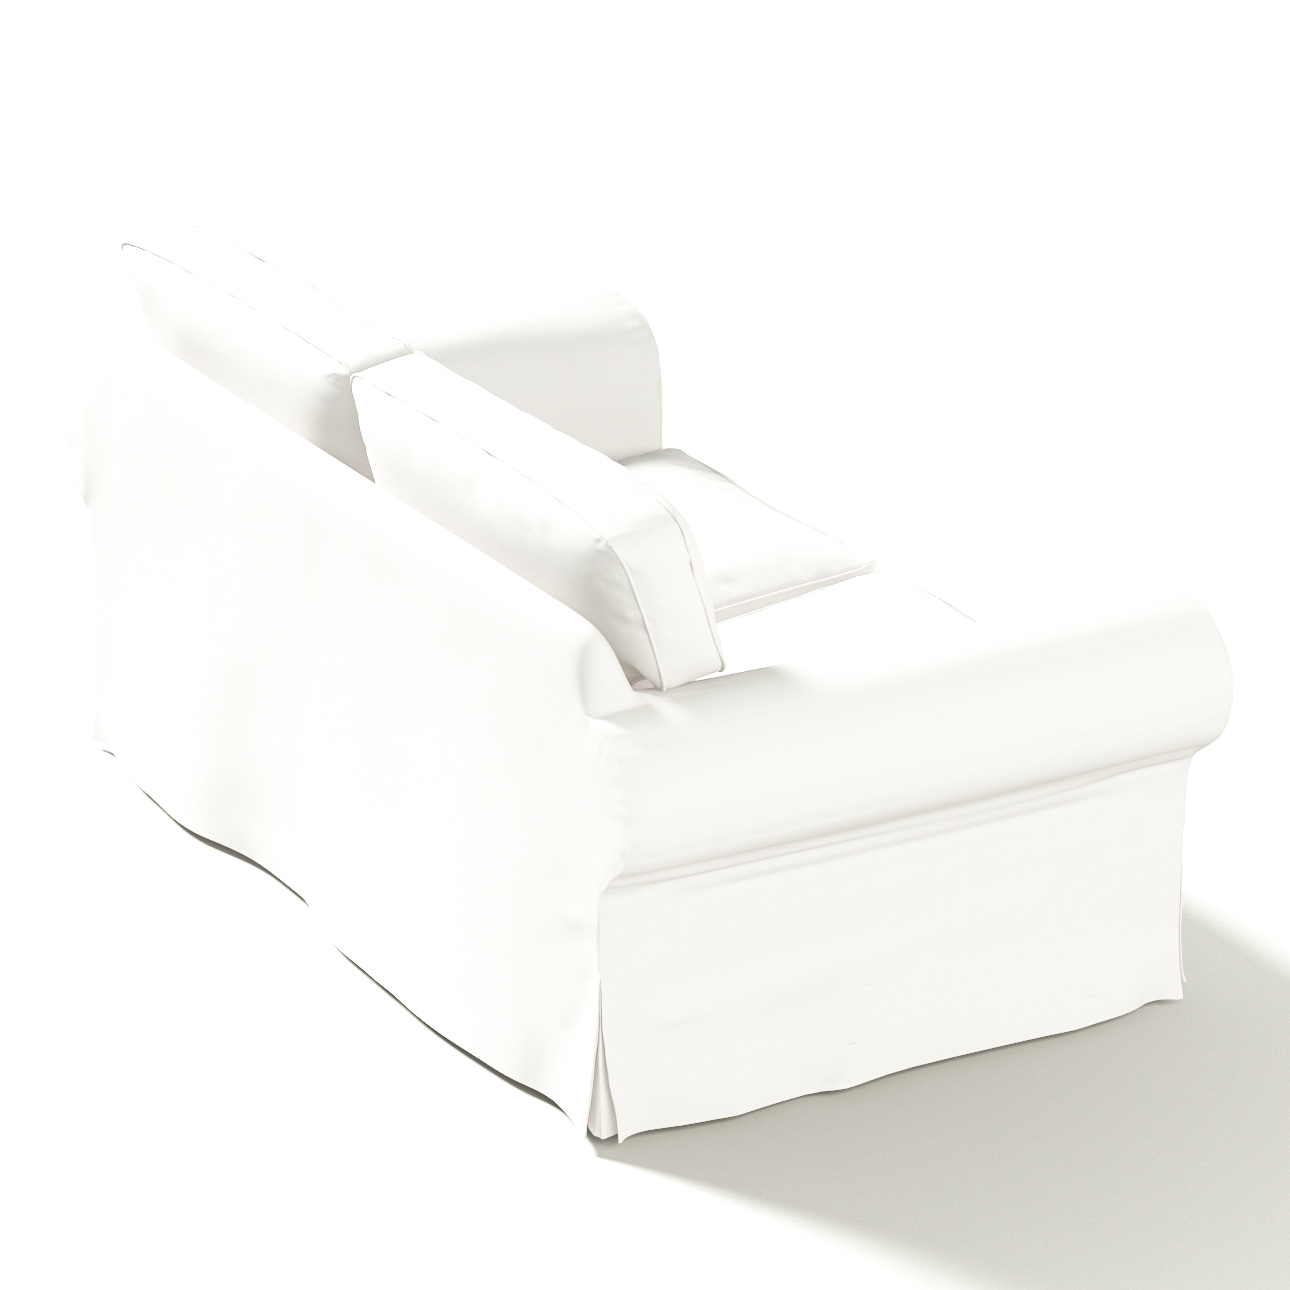 Bezug für Ektorp 2-Sitzer Schlafsofa NEUES Modell, weiss, Sofabezug für  Ek günstig online kaufen